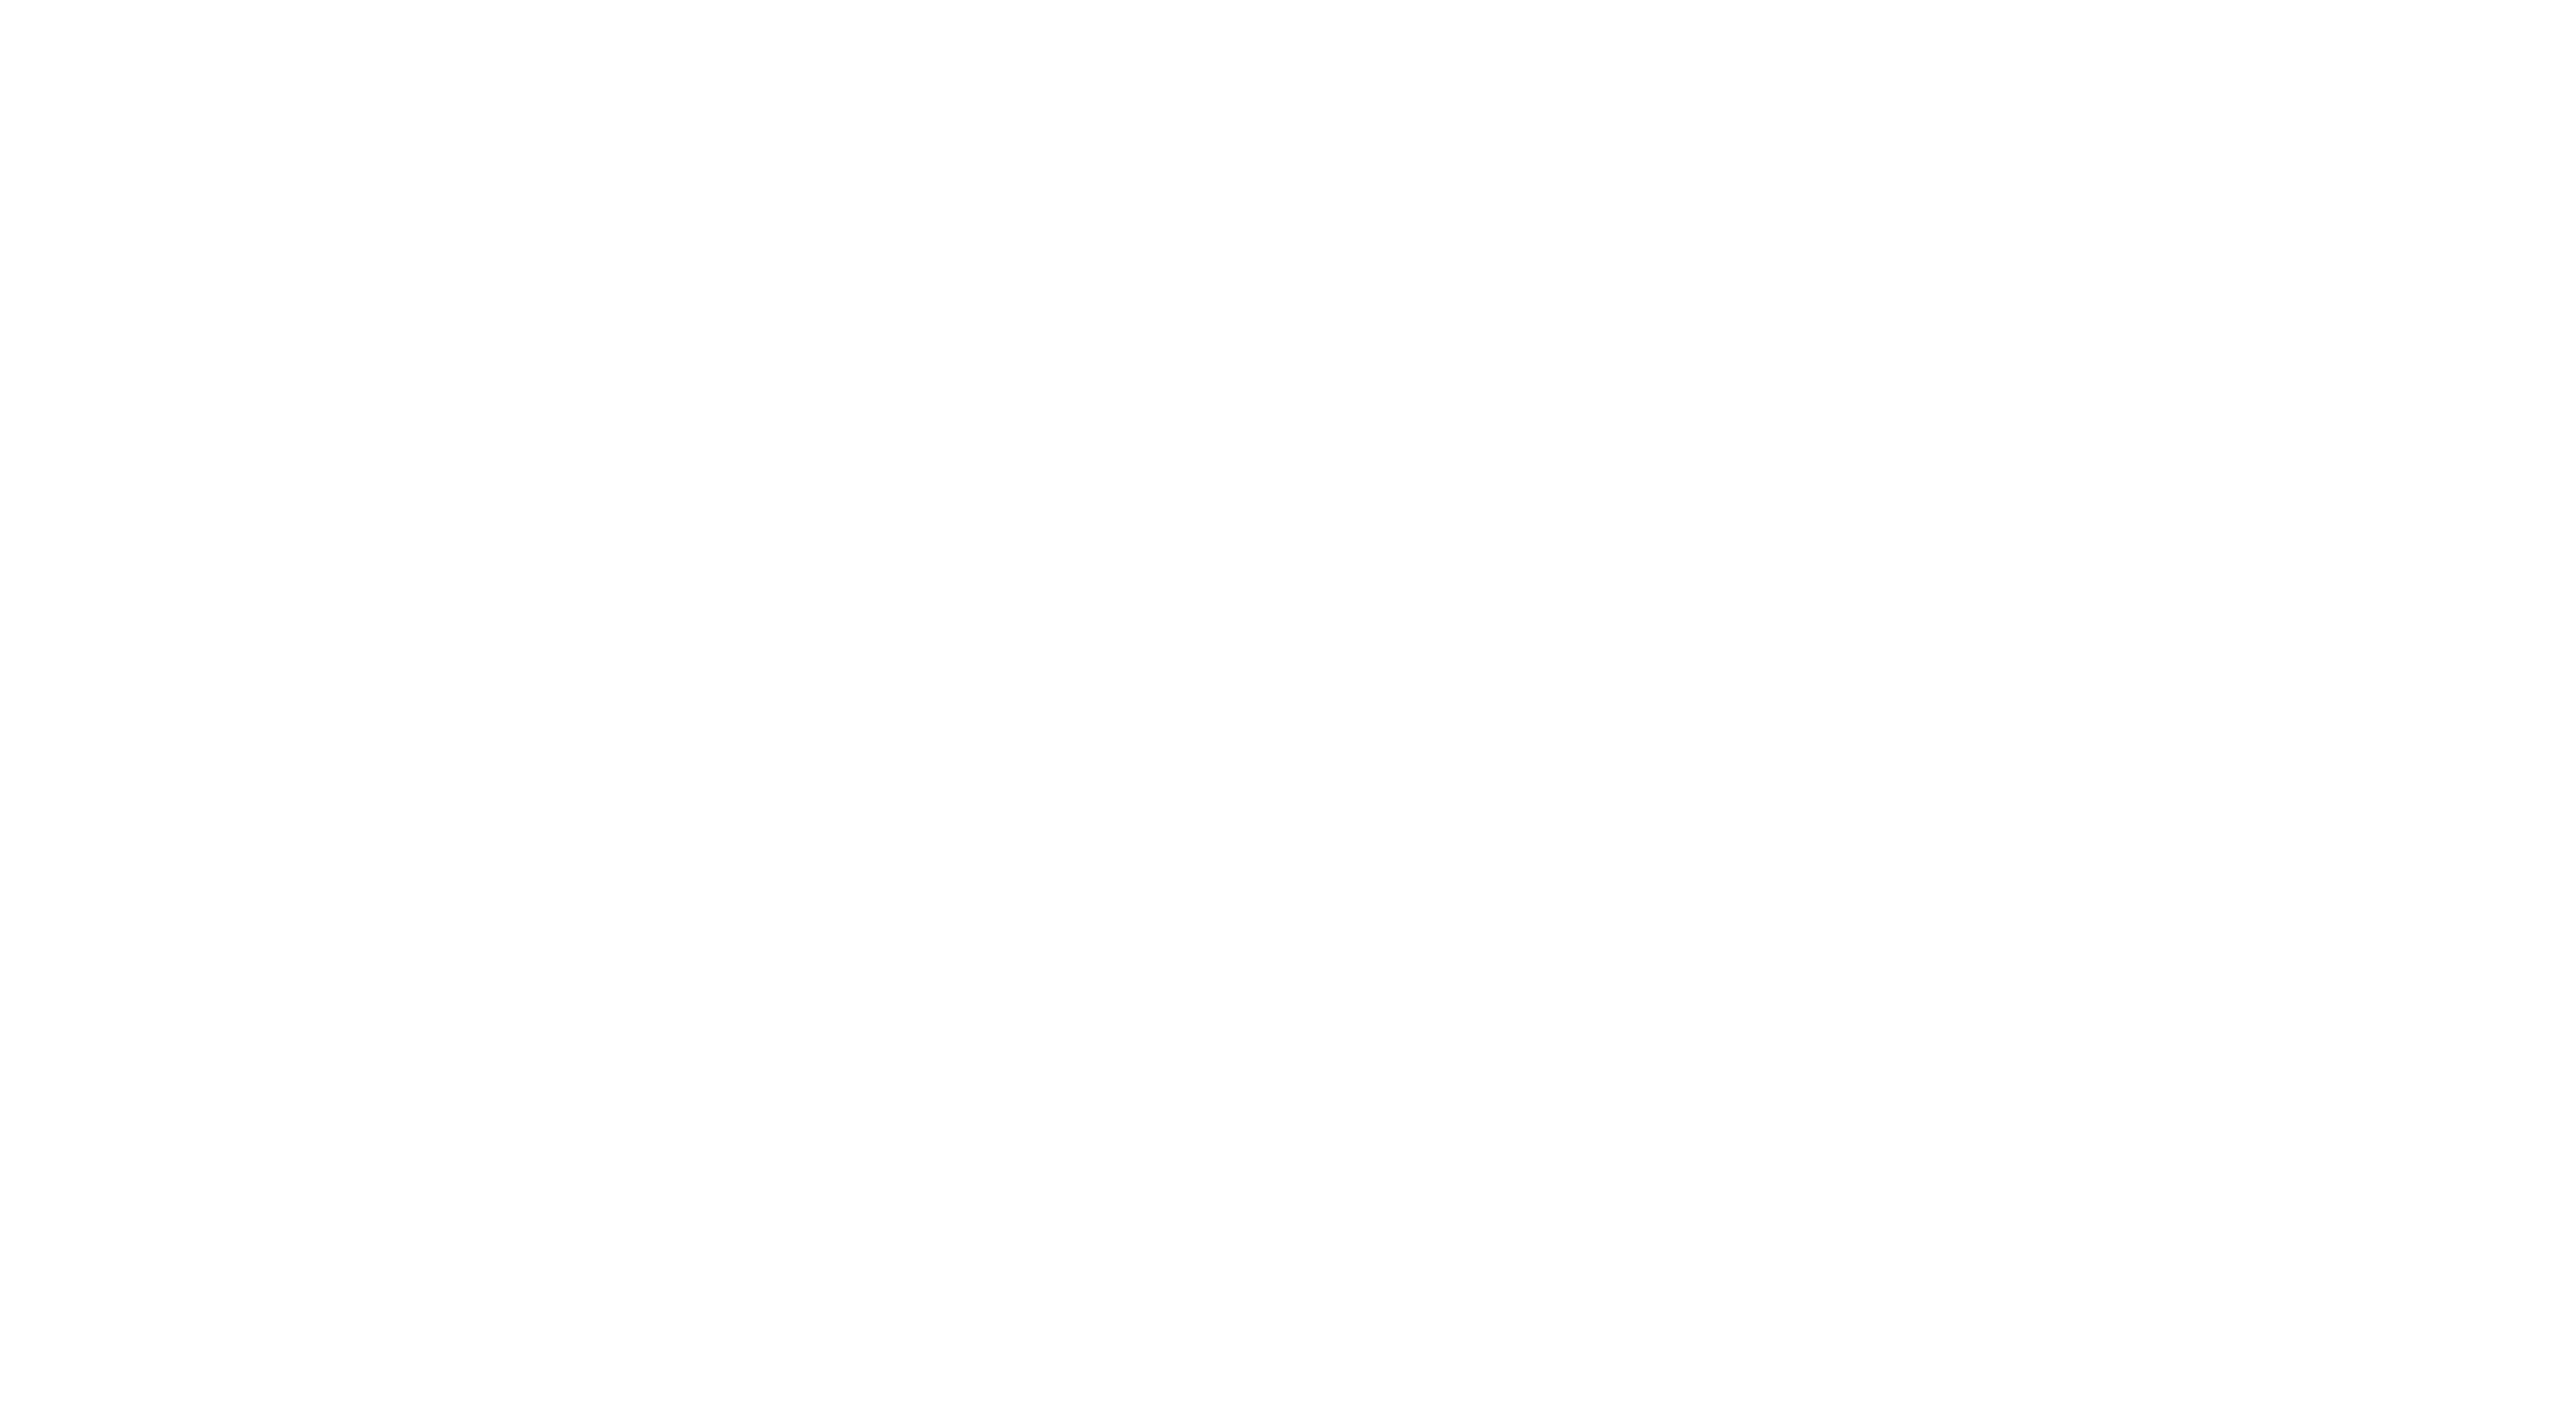 PrairieGrass at Waukee logo